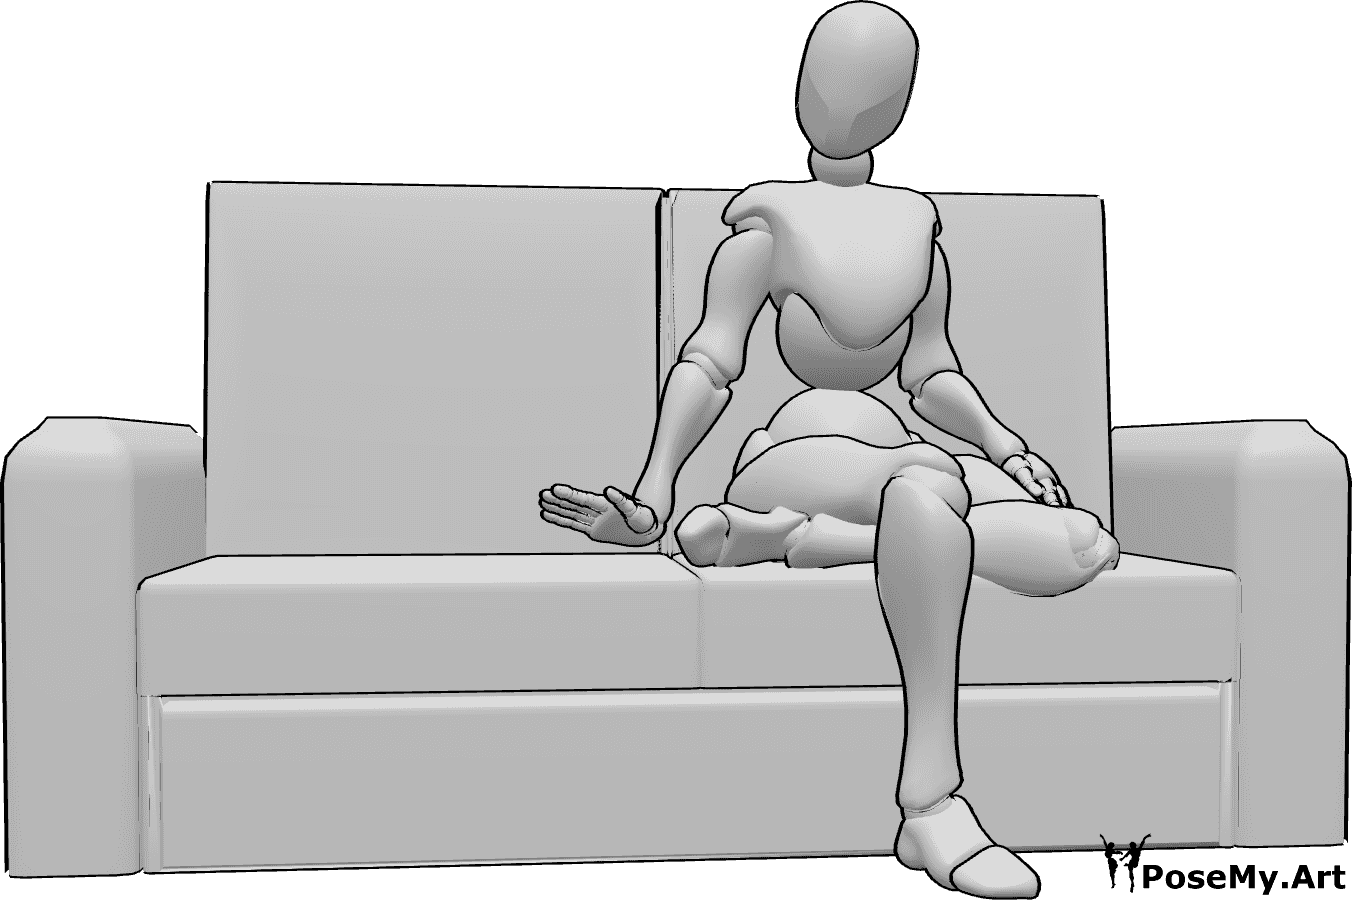 Riferimento alle pose- Donna invitante in posa seduta - La donna è seduta sul divano con le gambe incrociate e invita a sedersi.